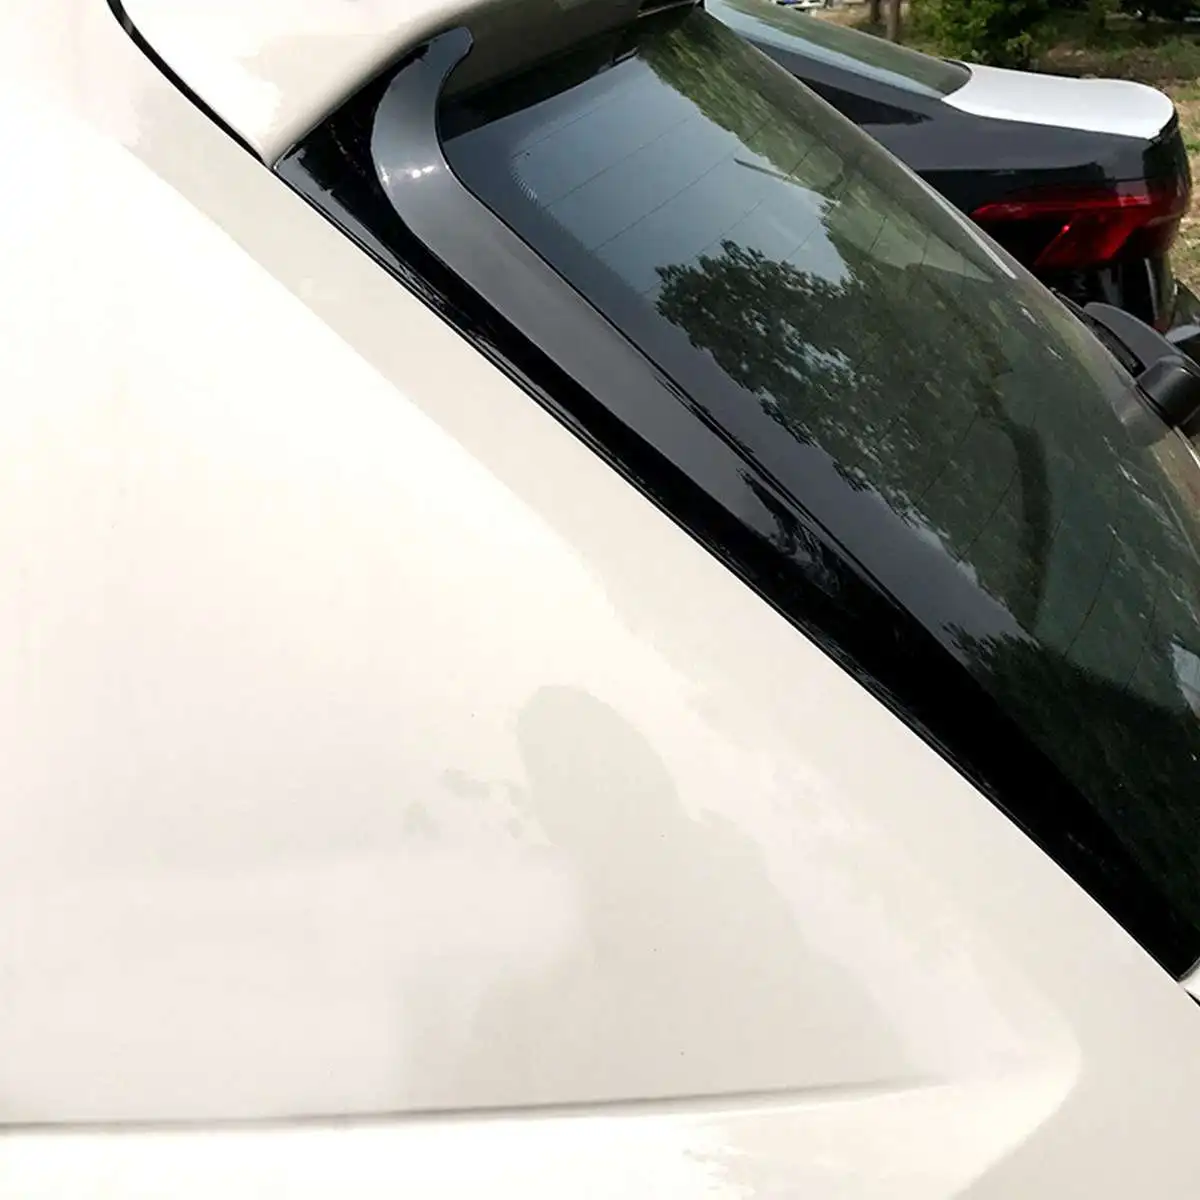 Пара бокового спойлера заднего стекла крыло для VW для Polo MK5 2011-/MK6+ глянцевый Canard Canards сплиттер не для GTI модели